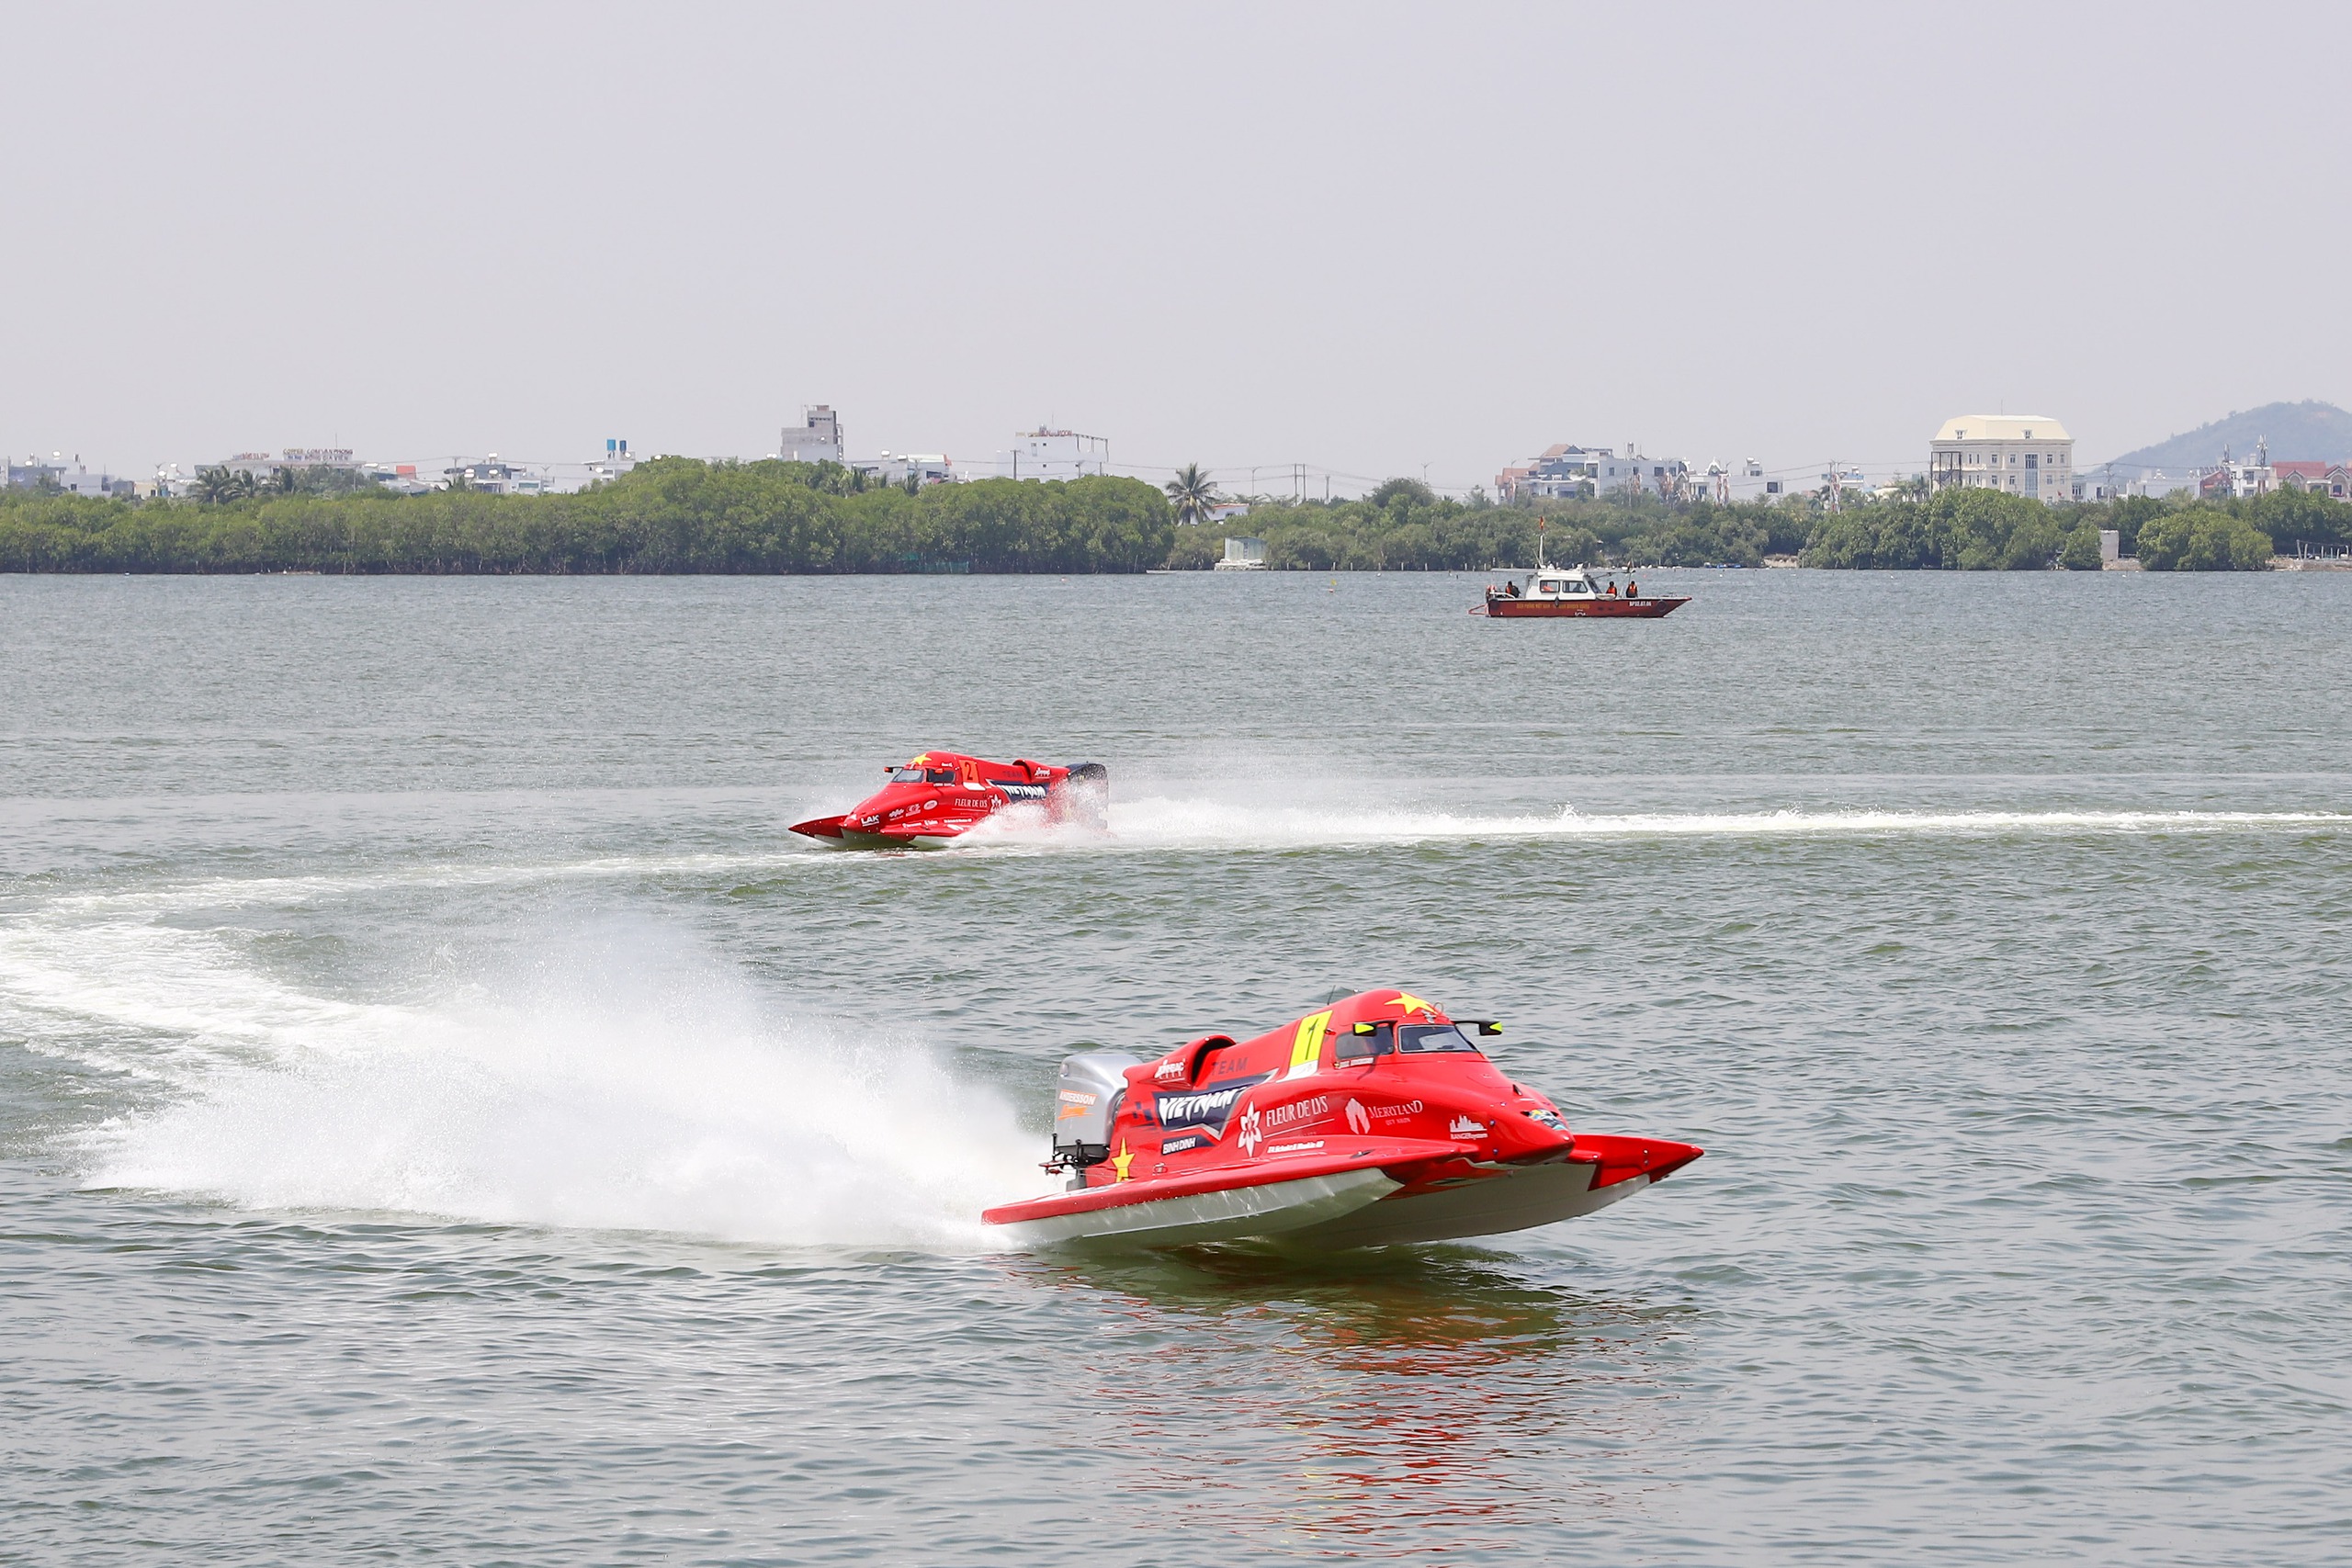 Quyền Chủ tịch nước dự khai mạc giải đua thuyền máy quốc tế lần đầu tổ chức tại Việt Nam- Ảnh 3.